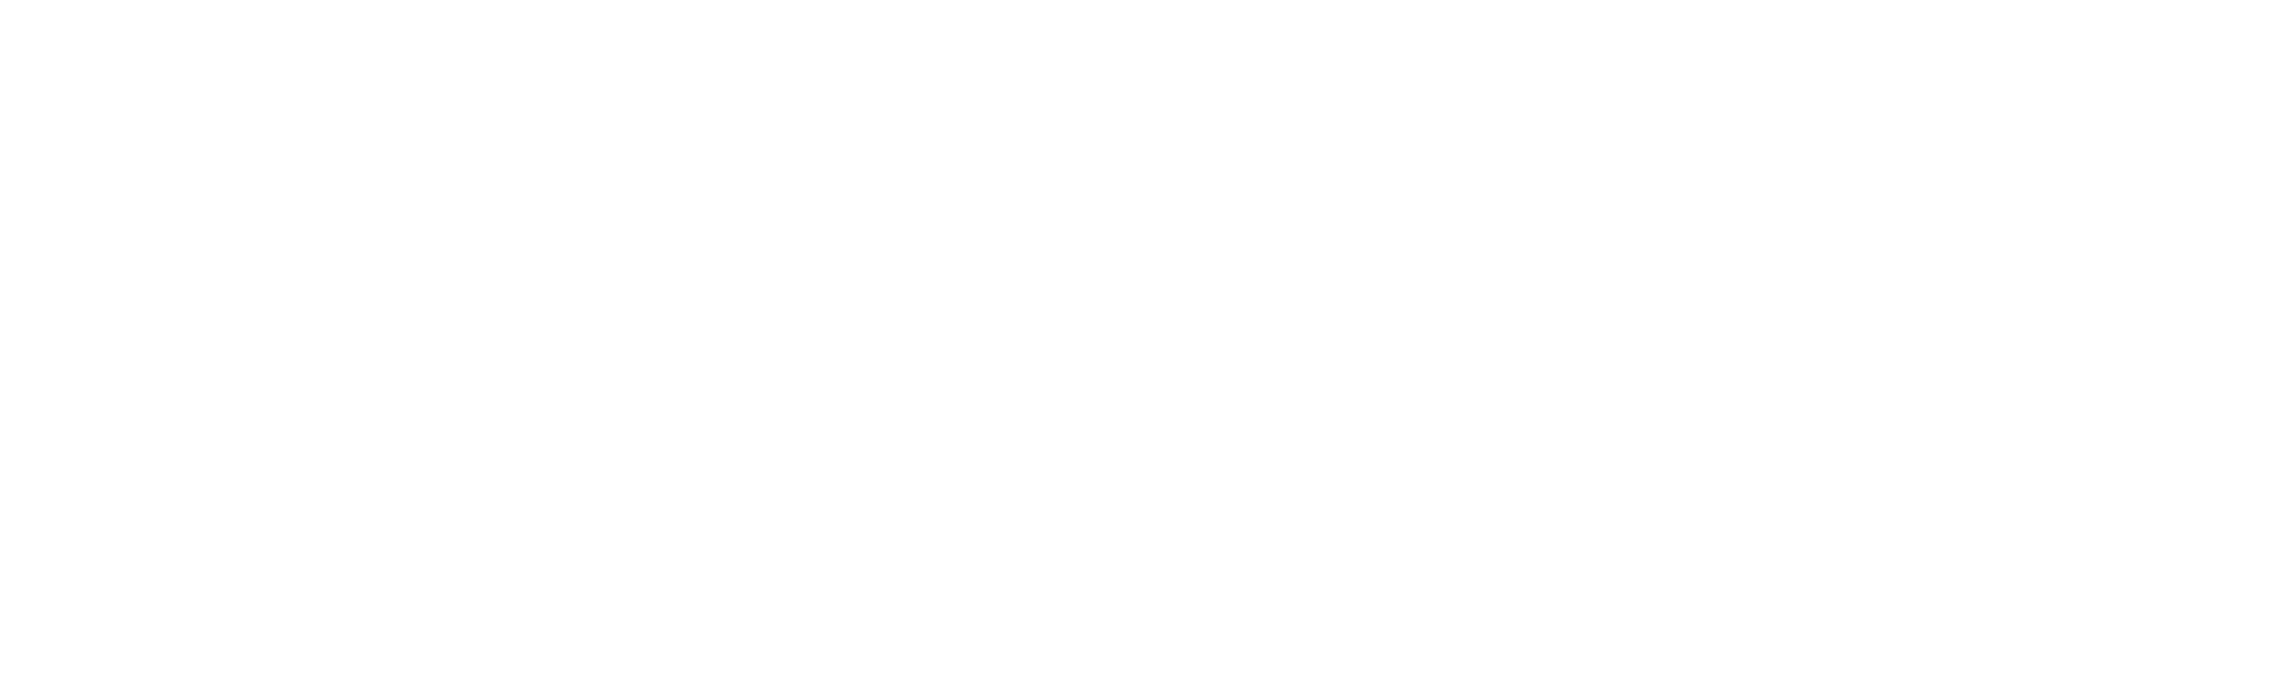 sfp_logo_no_words